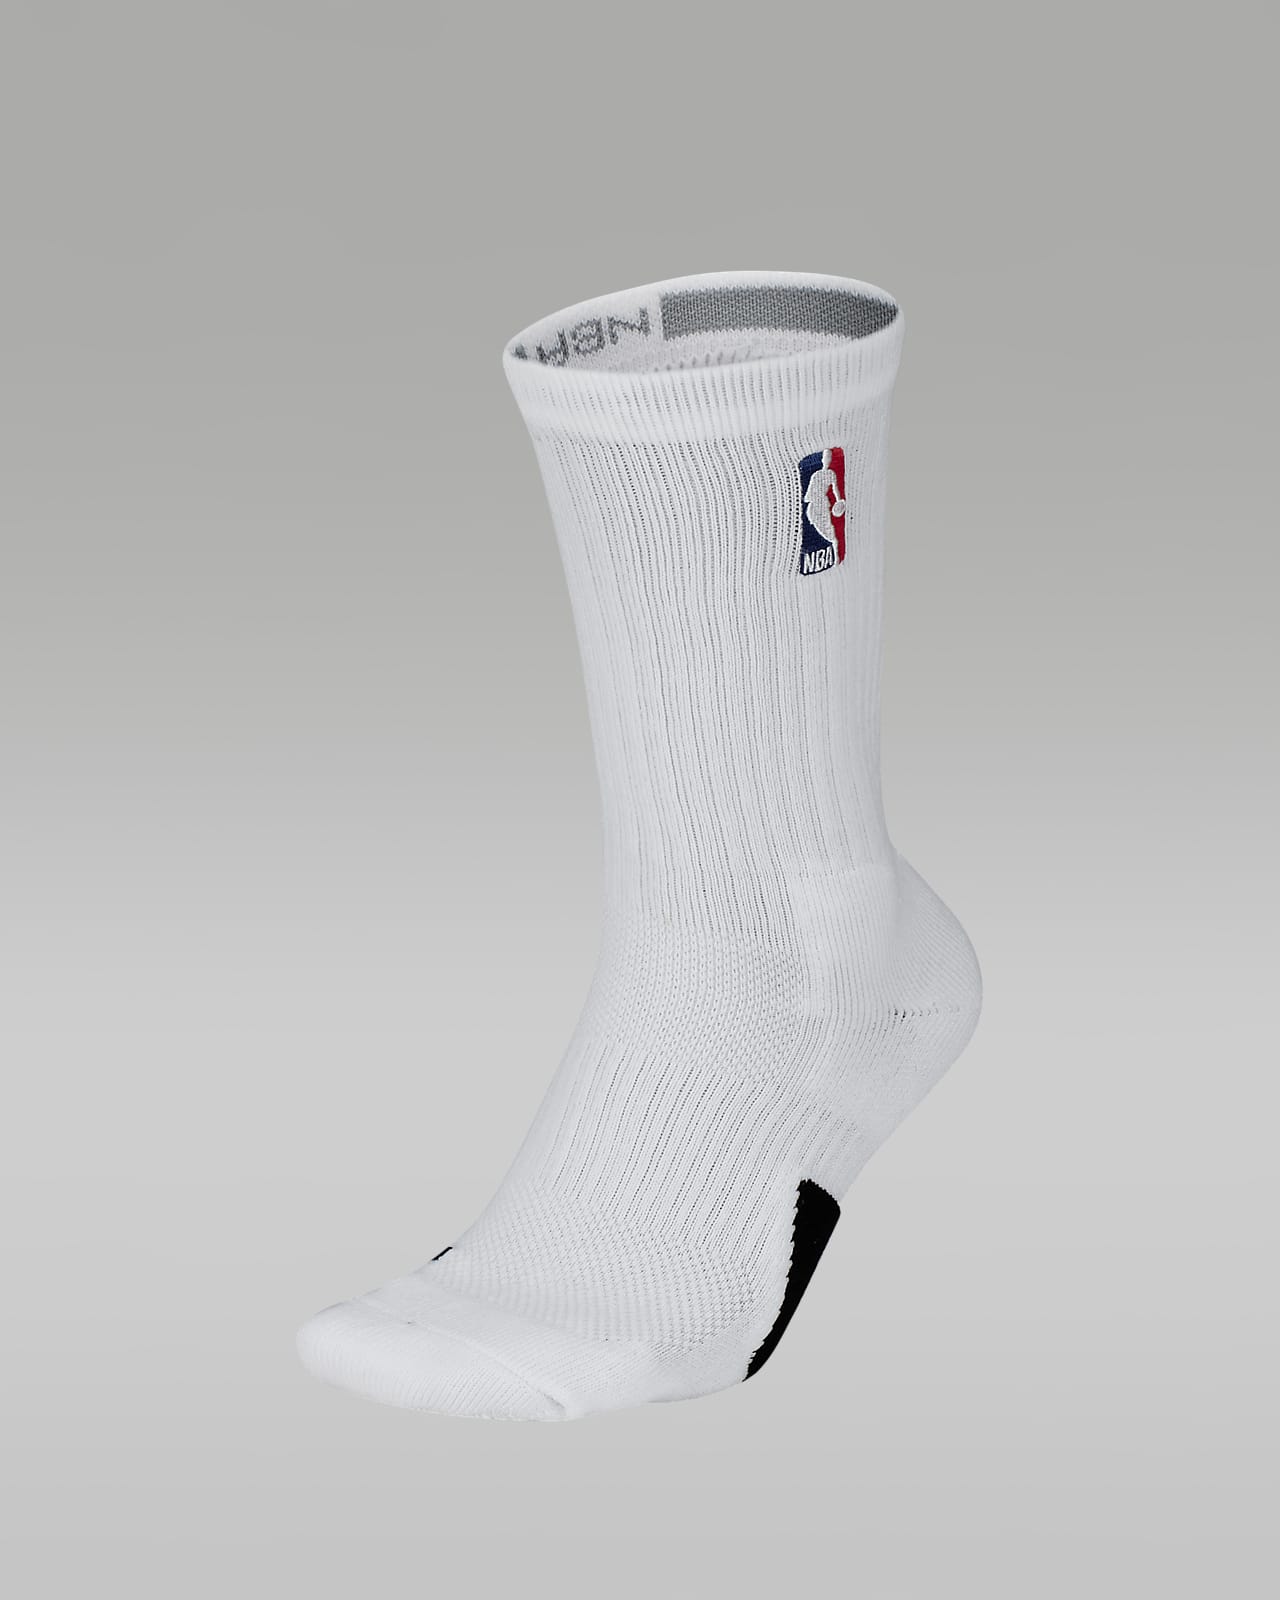 Chaussettes NBA Jordan Crew black/white